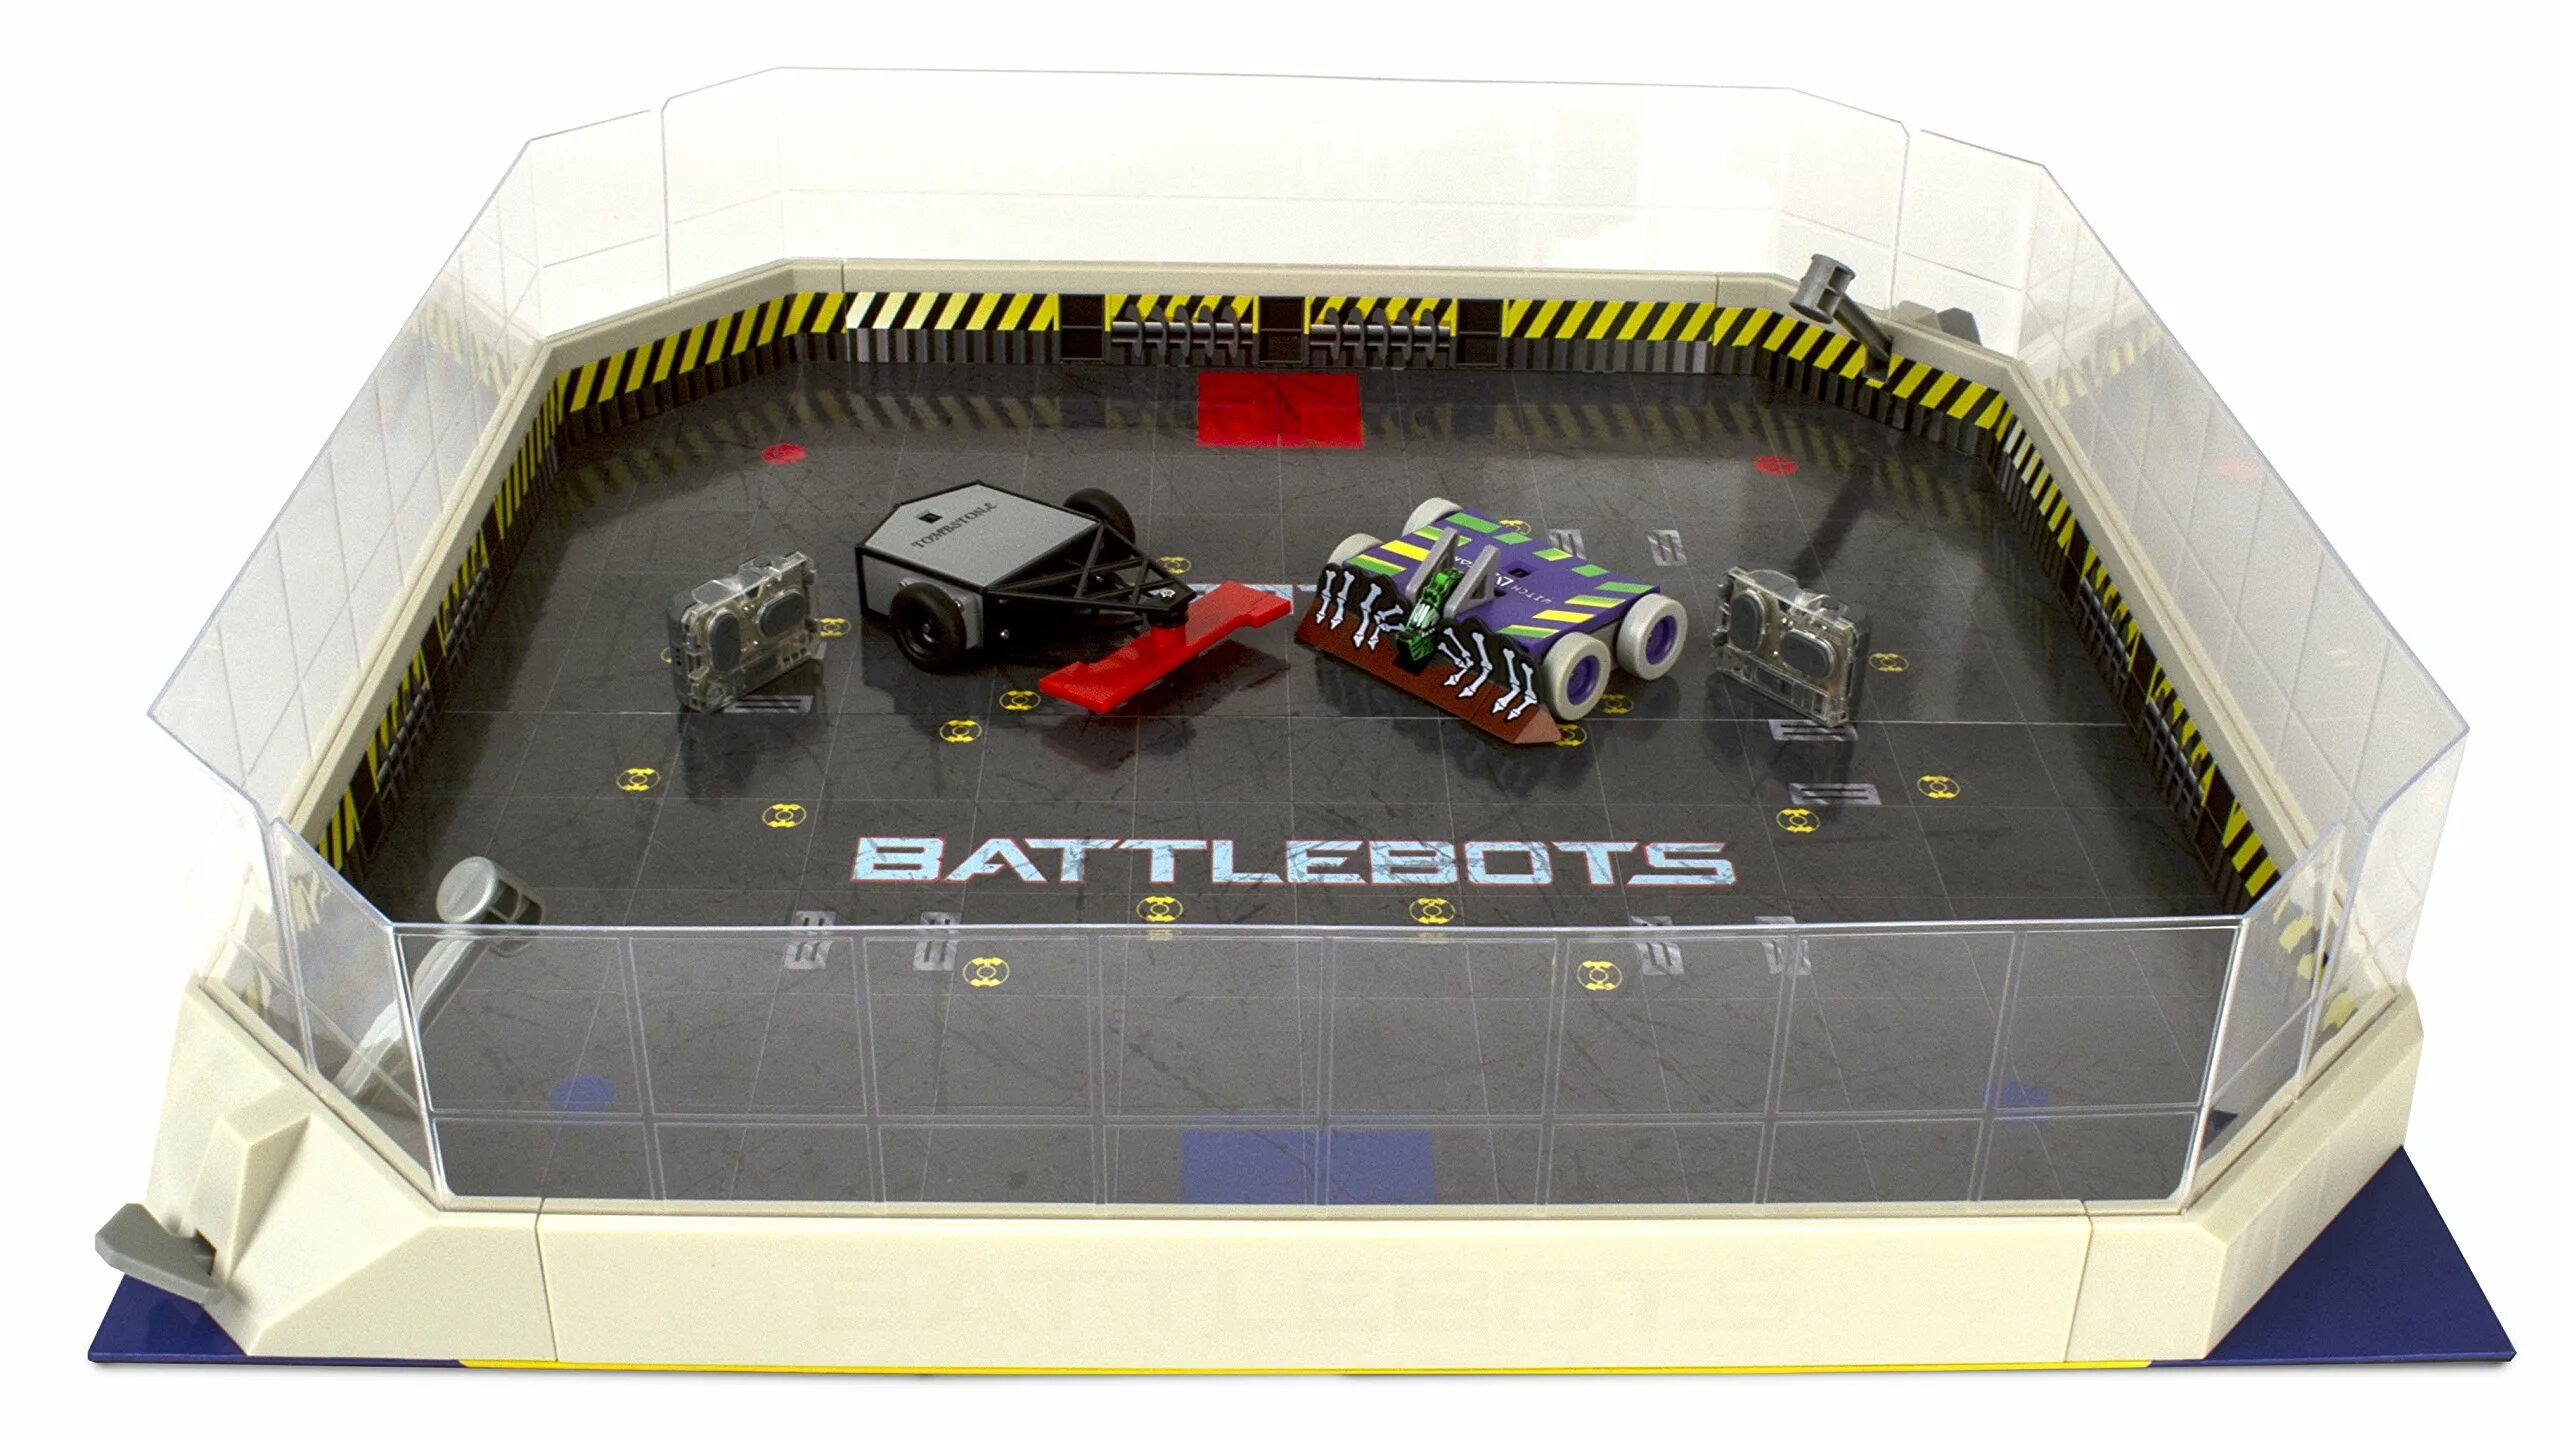 Игрушка Hexbug Battlebots Arena. Бои роботов Battlebots. Битва роботов на арене. Battlebots игрушки Hexbug Glitch. Битва роботов мини